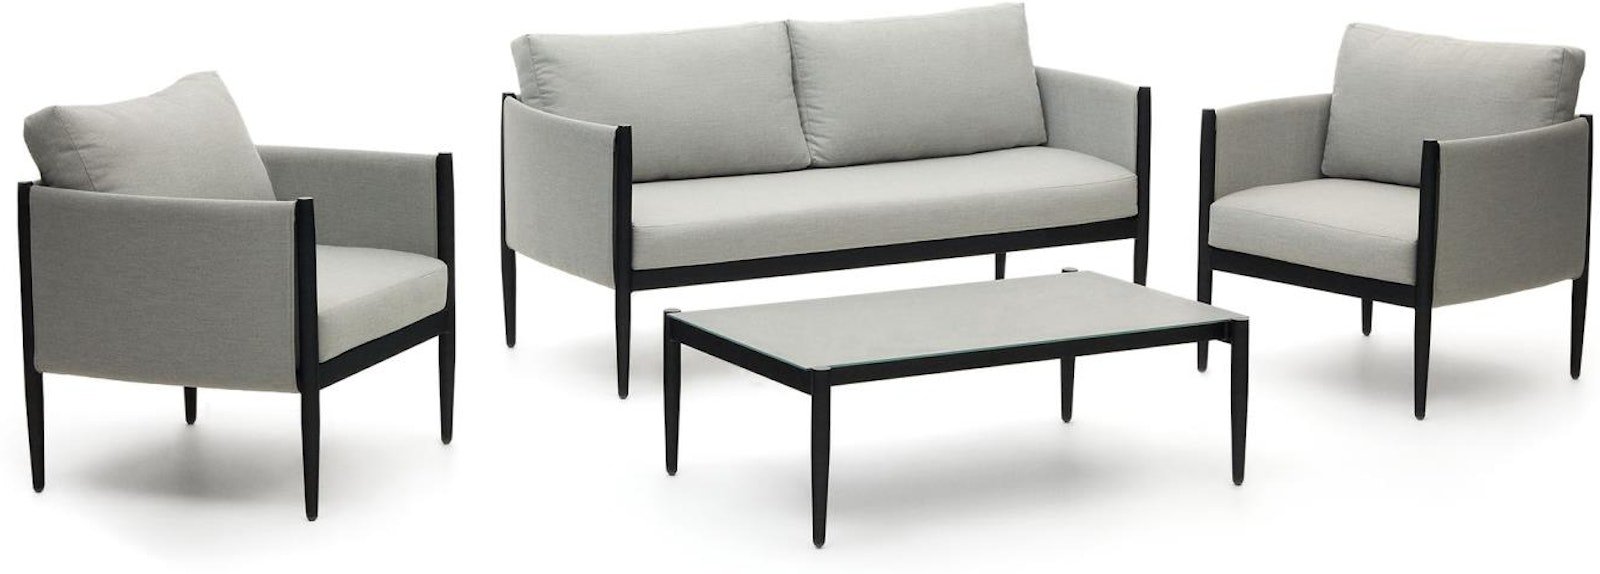 Satuna, Udendørs sofasæt, nordisk, moderne, metal by Laforma (H: 67 cm. x B: 164 cm. x L: 72 cm., Grå/Sort)